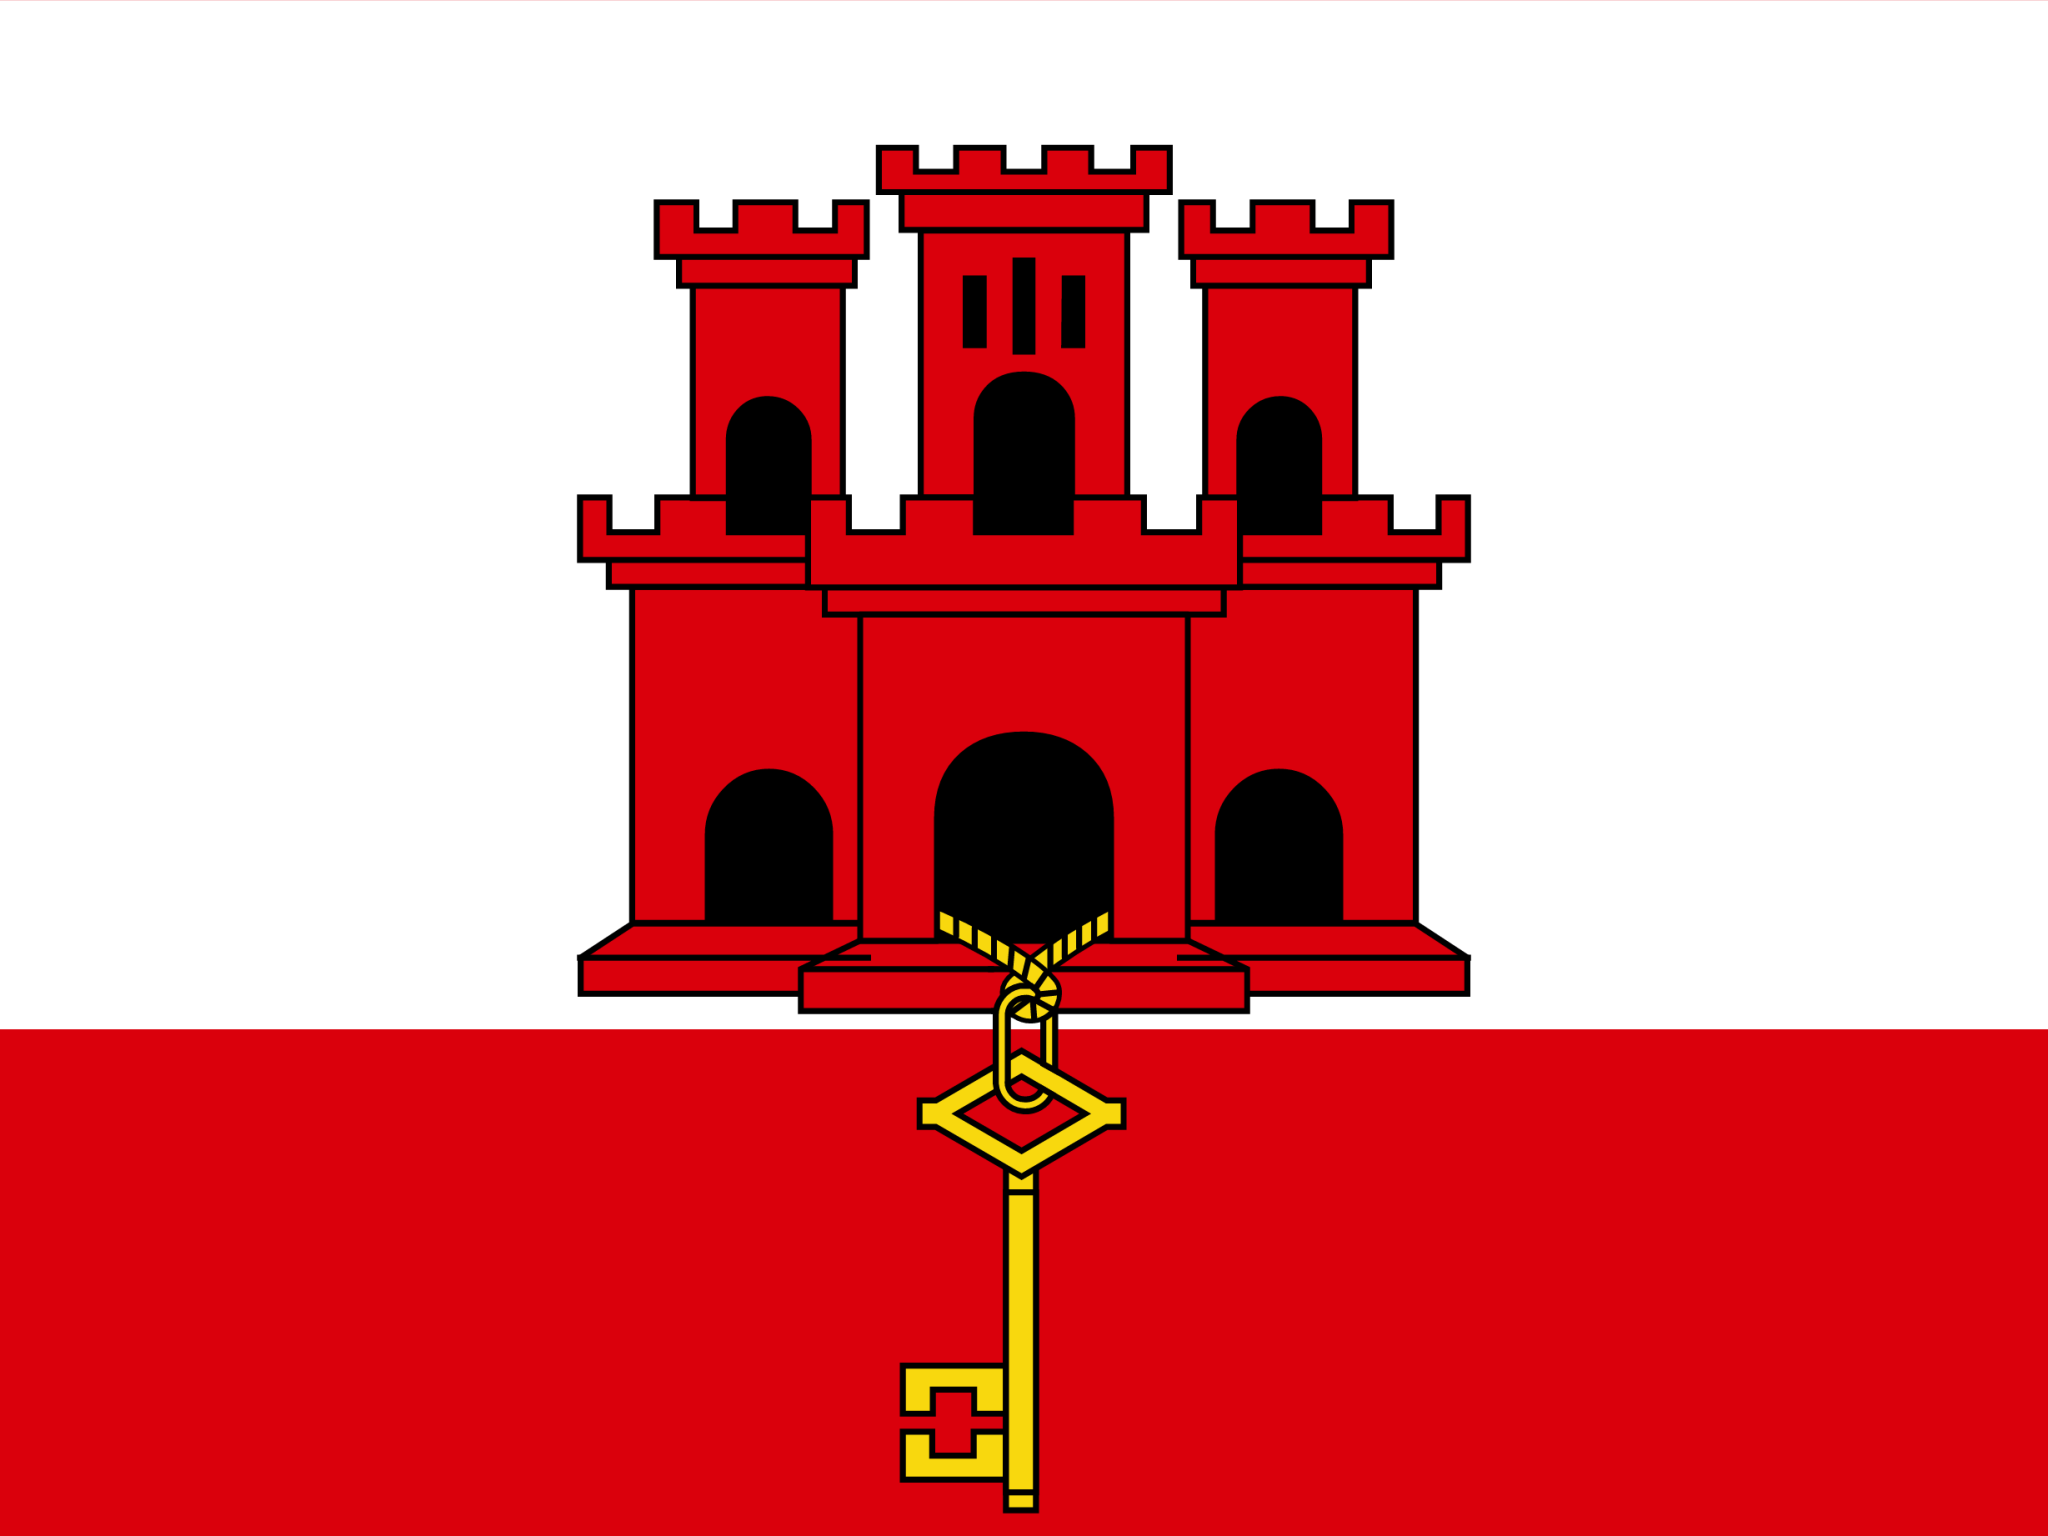 Gibraltar icon